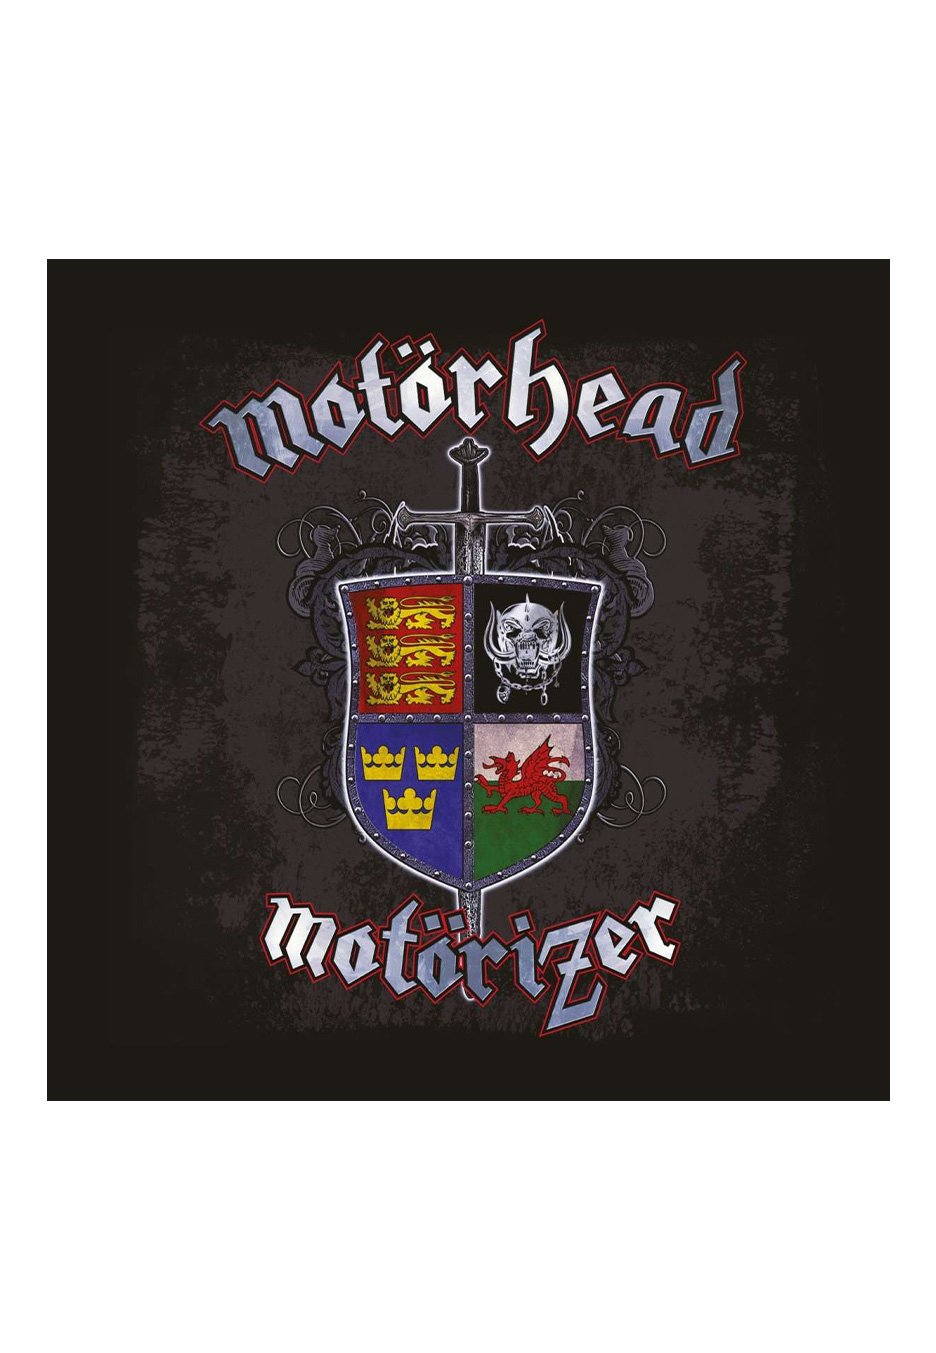 Motörhead - Motörizer Ltd. Blue - Colored Vinyl